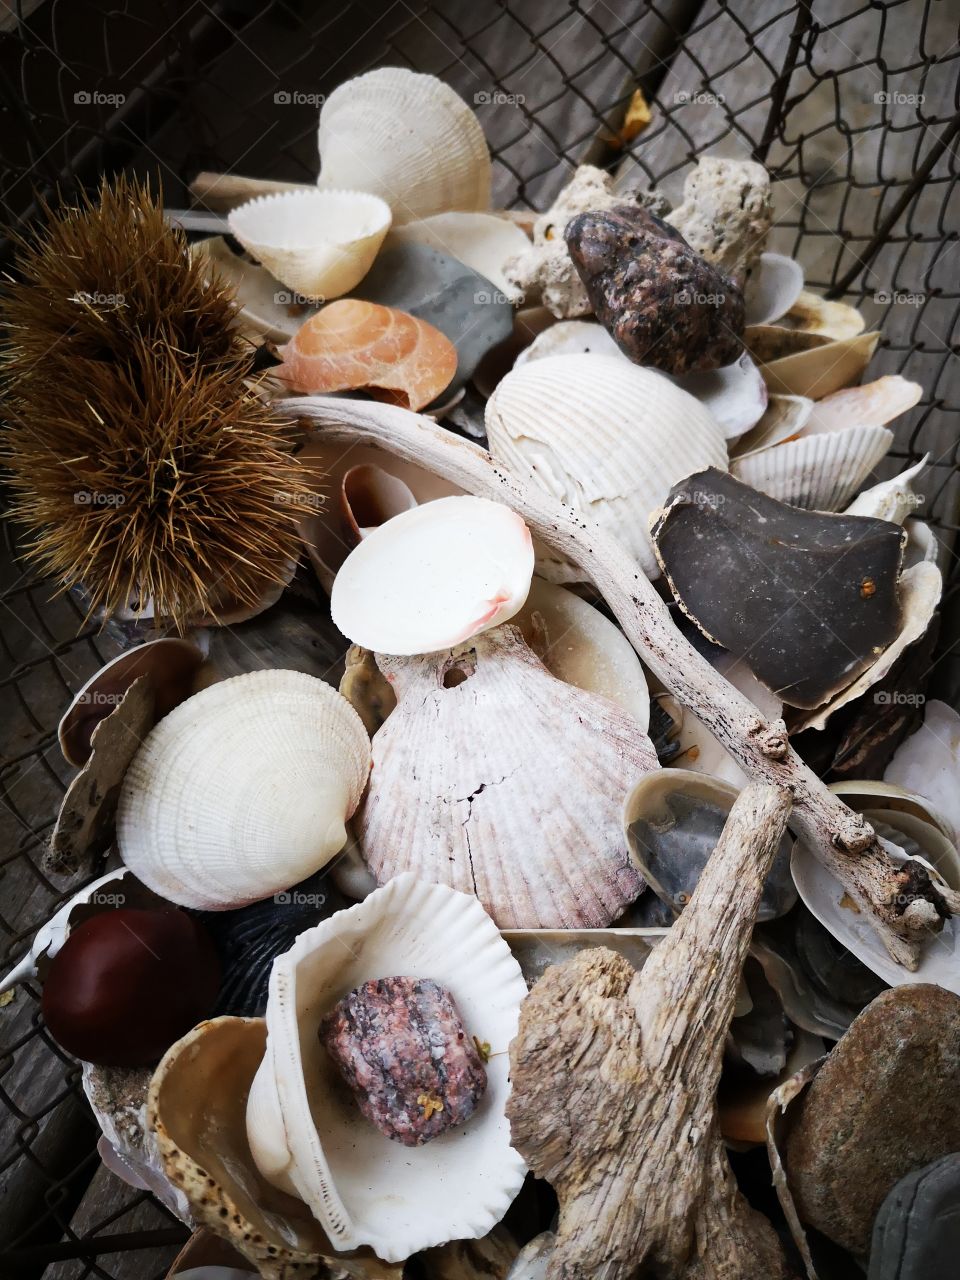 Shell, No Person, Food, Nature, Shellfish